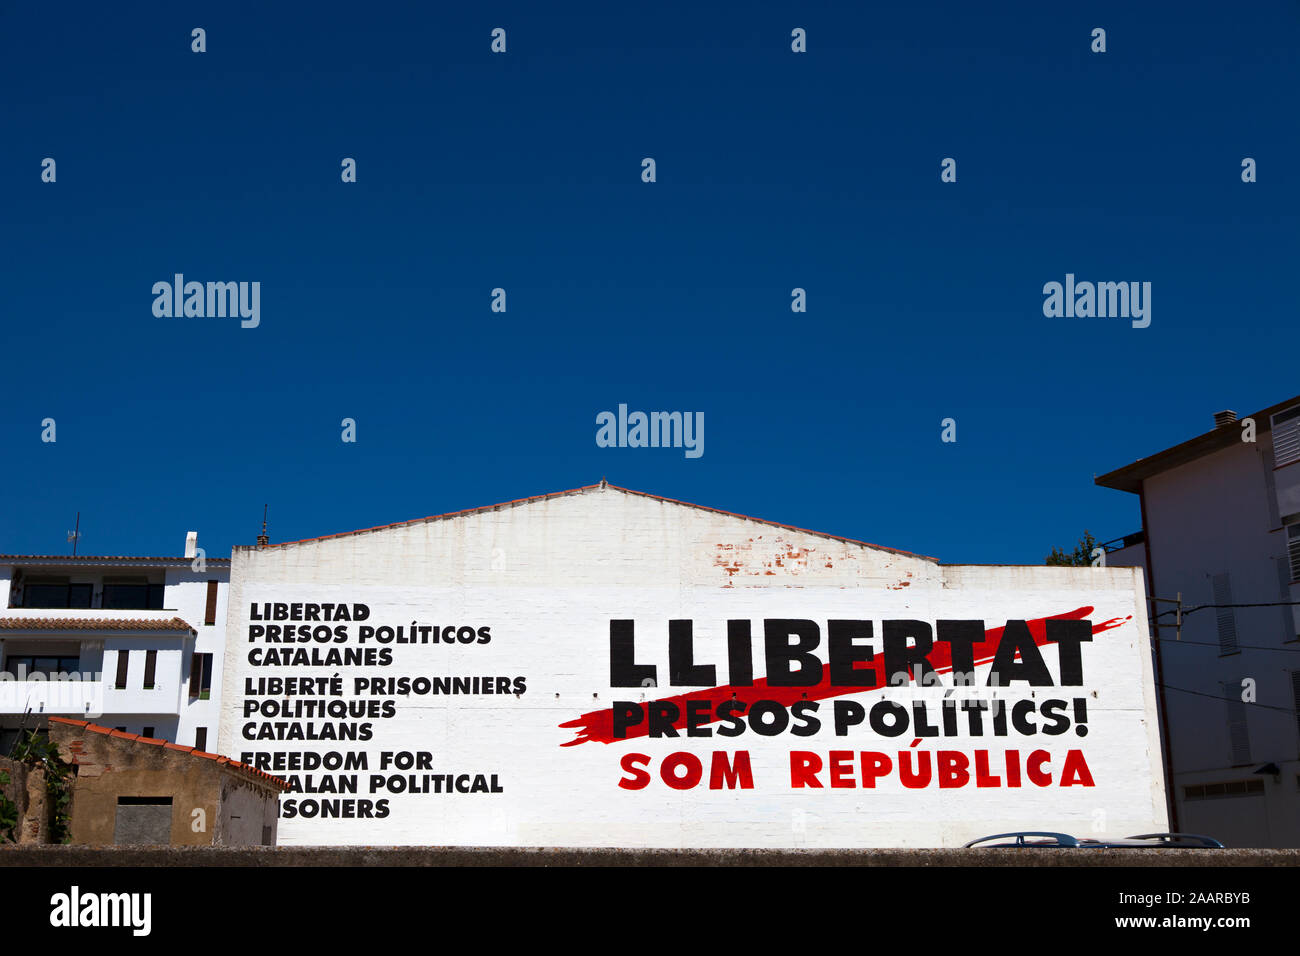 Llibertat Presos Politique - Libérer les prisonniers politiques fresque à Cadaques, Catalogne, Espagne. Fresque appelant à la libération de Catalan des responsables politiques et des s Banque D'Images